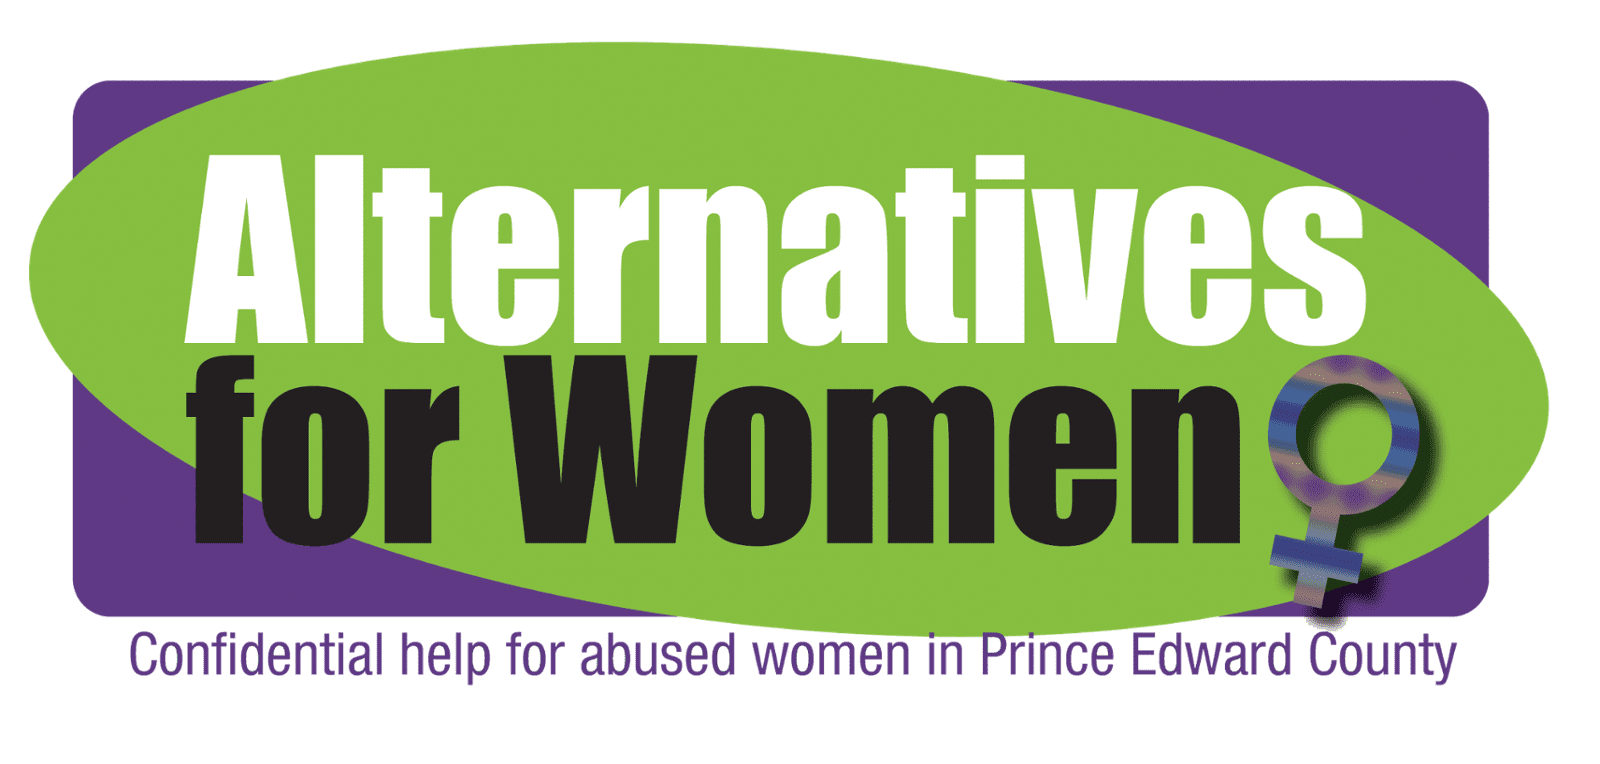 Alternatives for Women